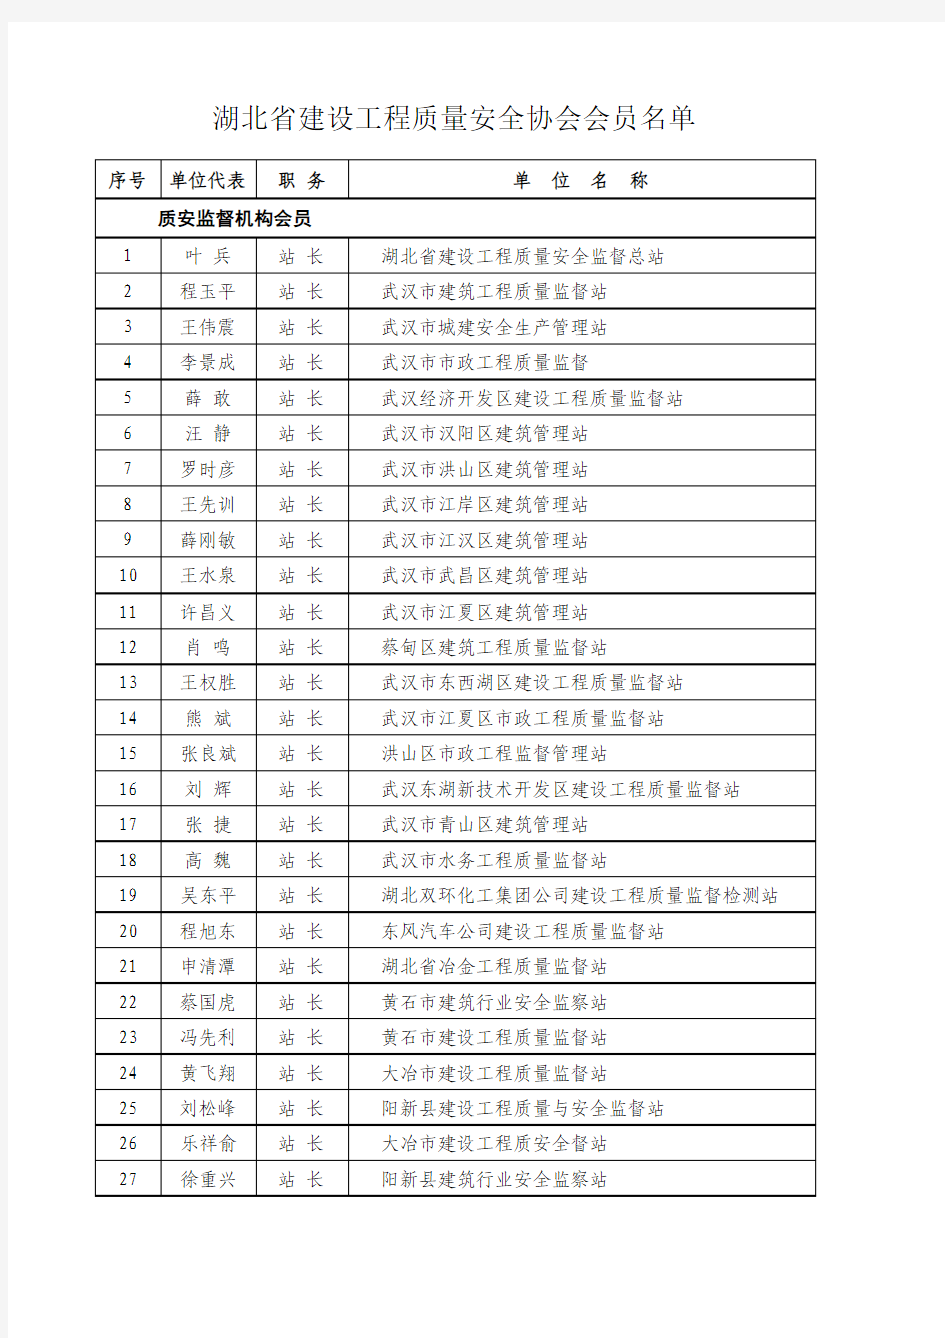 湖北省建设工程质量安全协会会员名单